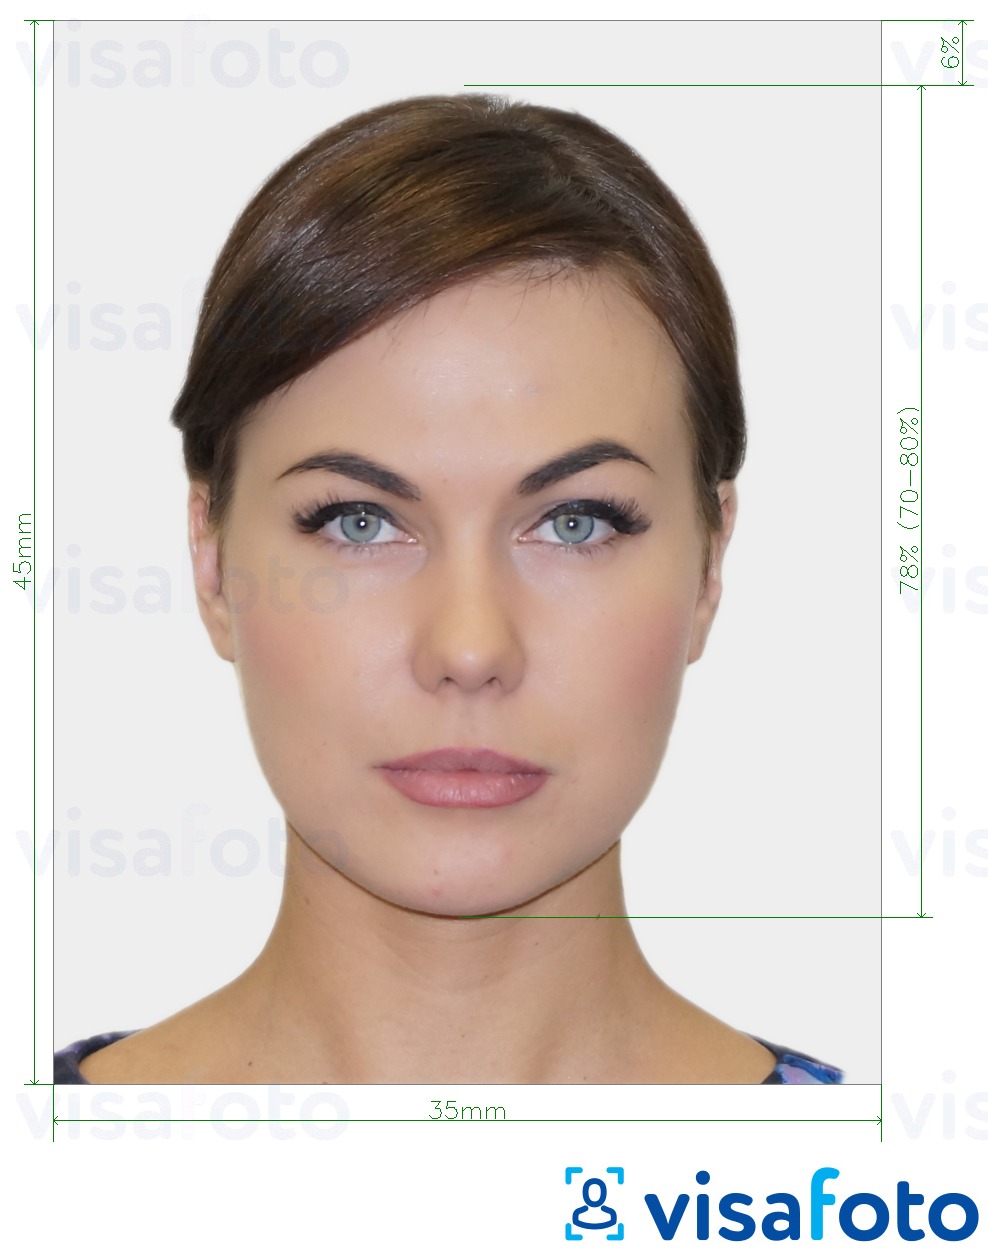 Fotobeispiel für Biometrisches Passfoto mit genauer größenangabe